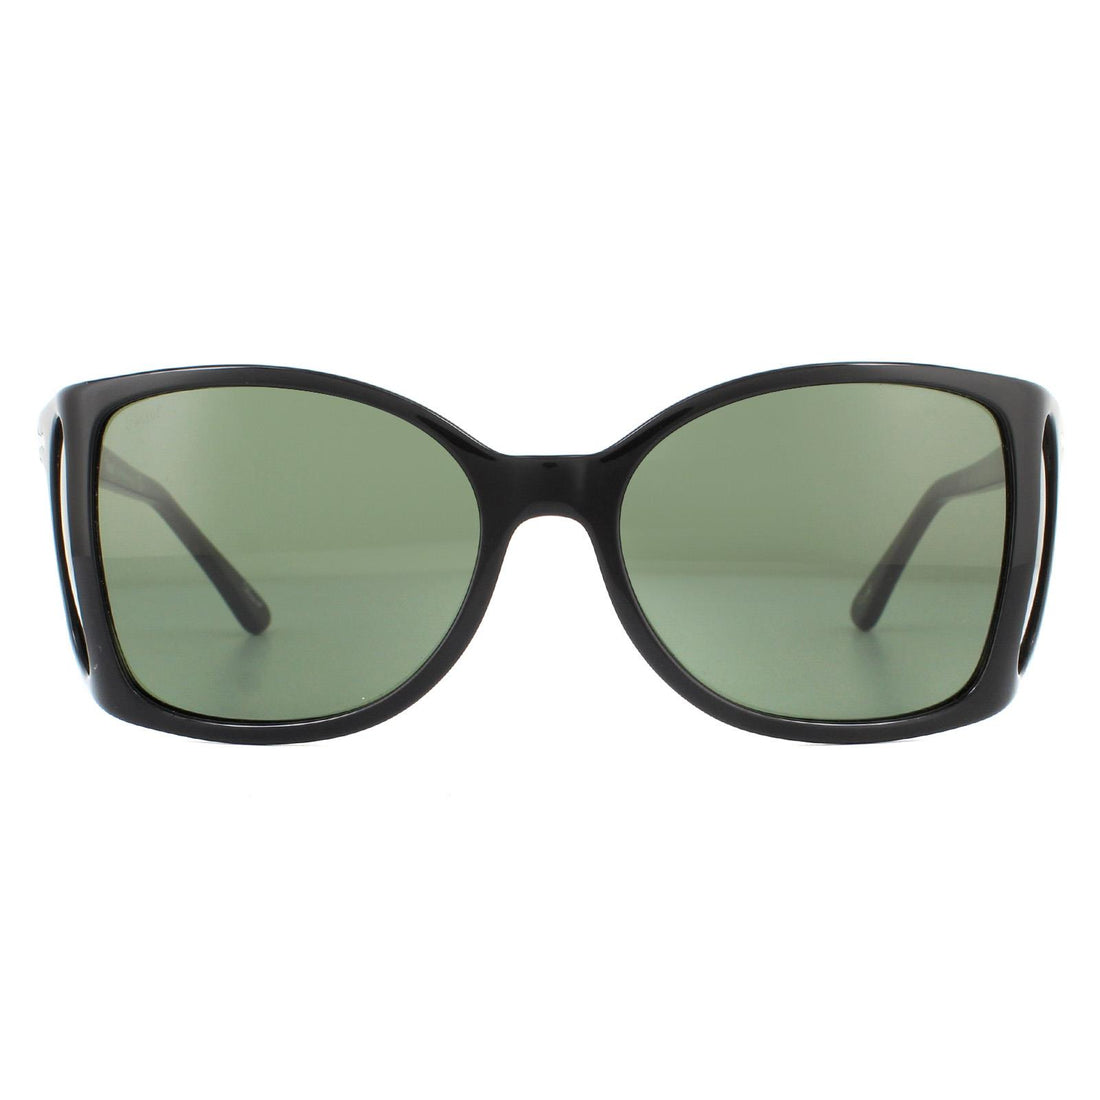 Persol PO0005 Sunglasses Black Green